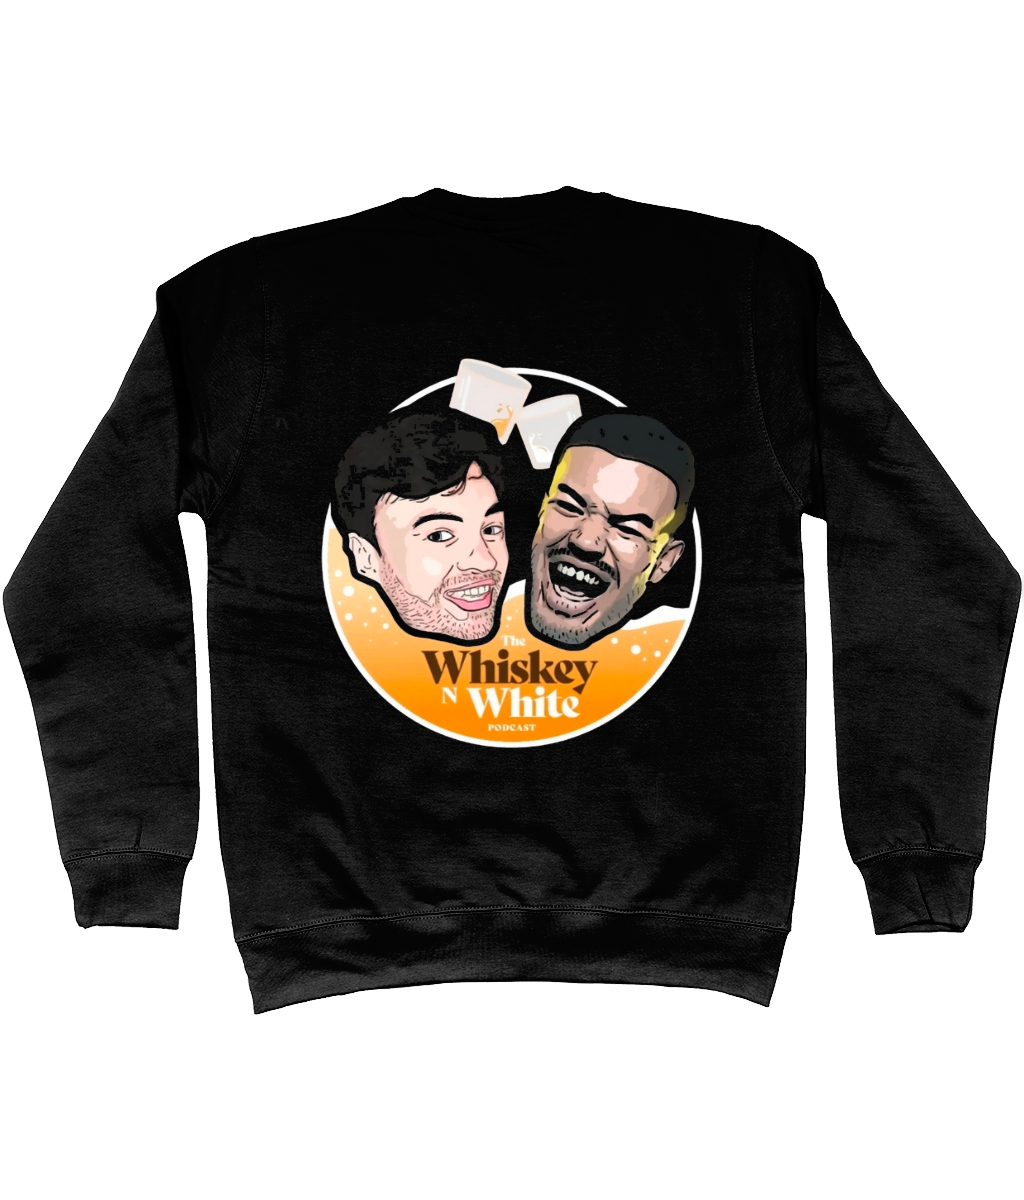 The Whiskey n White Podcast Unisex Sweatshirt